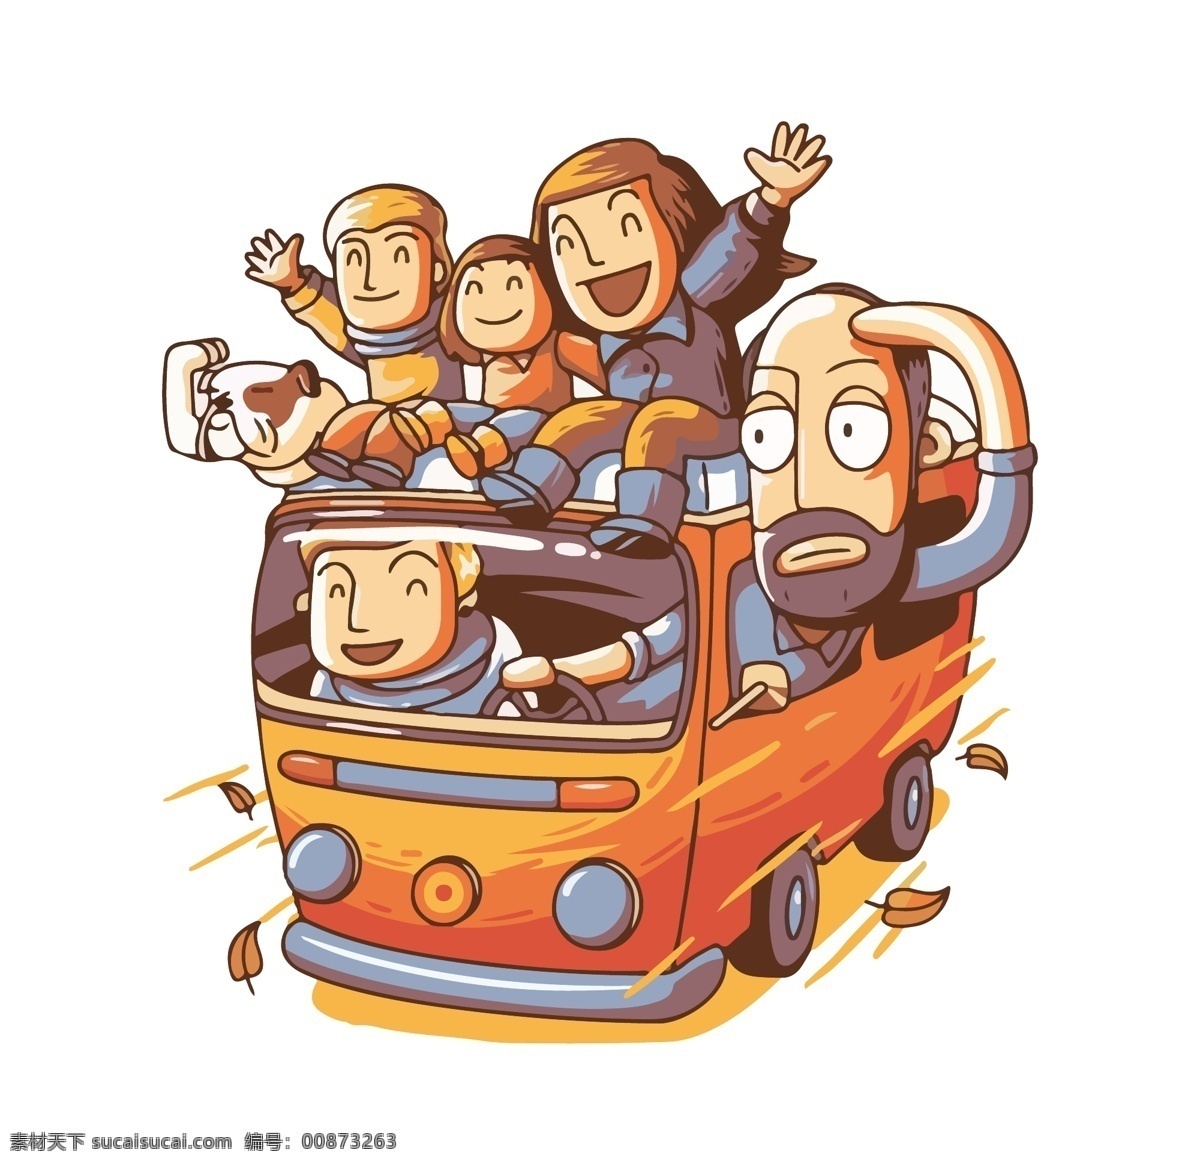 插画元素图片 巴士 图形插画 矢量图 卡通漫画 旅行 旅途